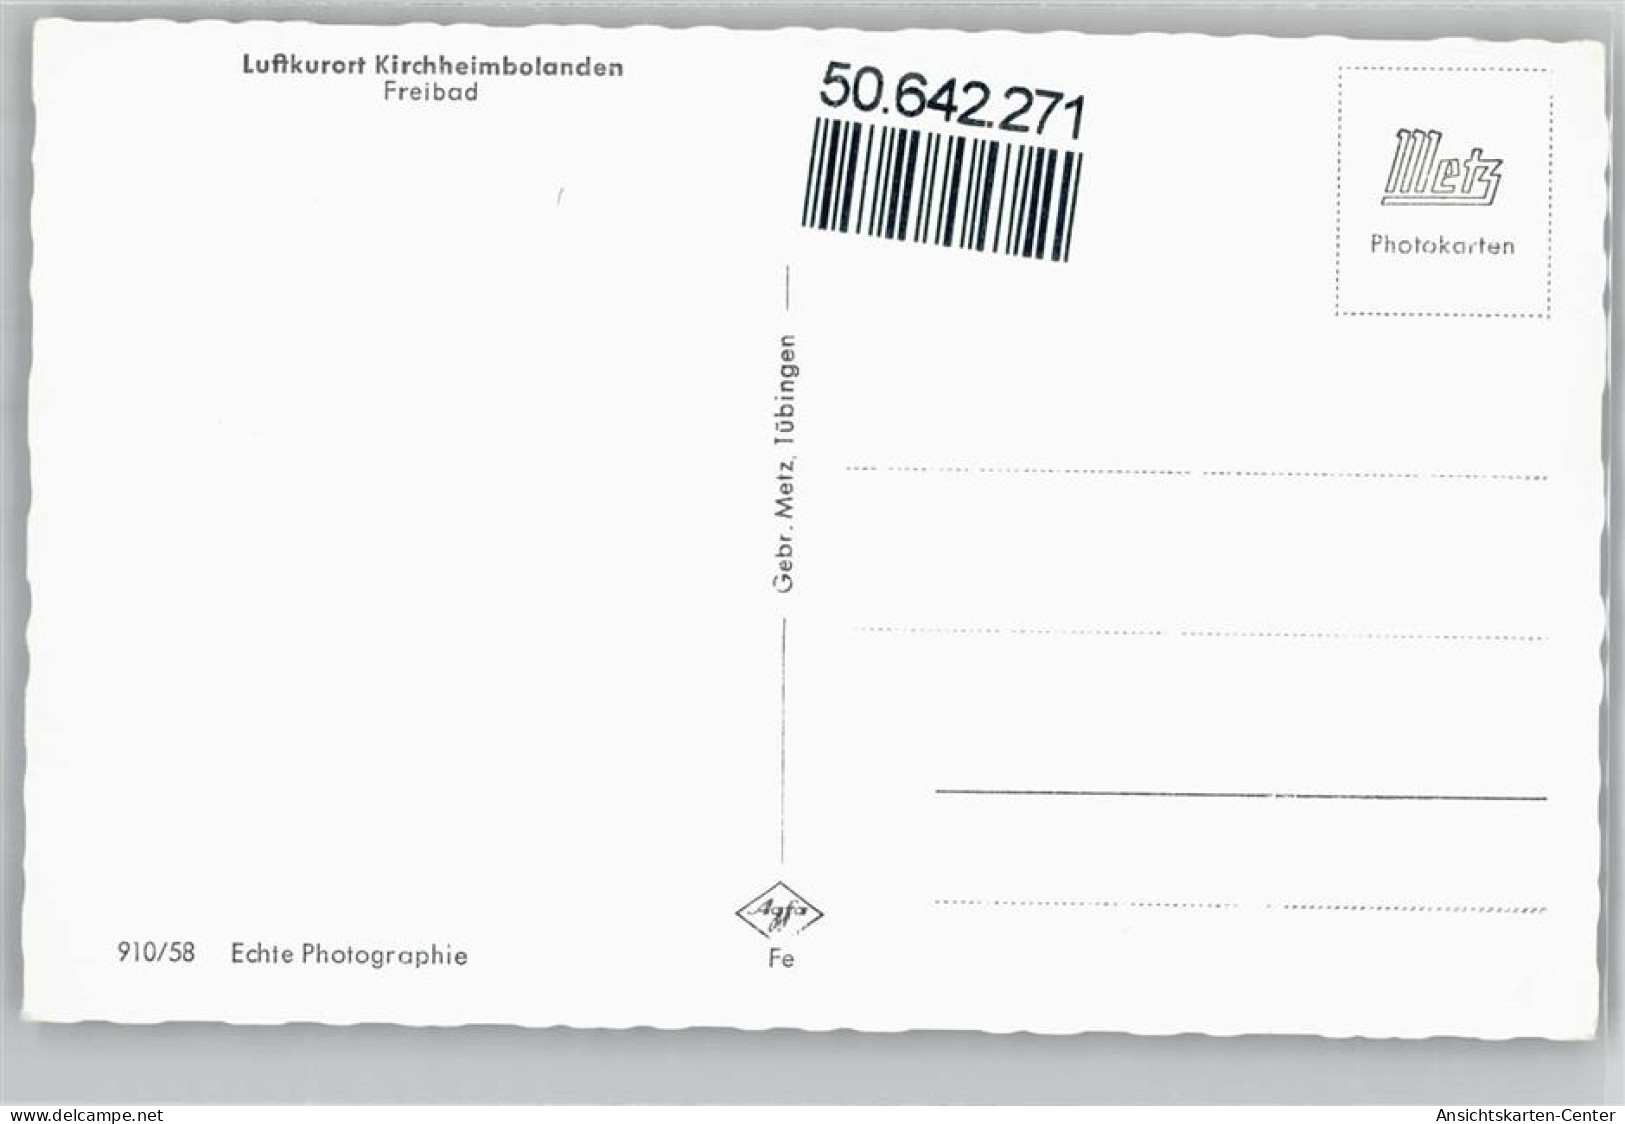 50642271 - Kirchheimbolanden - Kirchheimbolanden